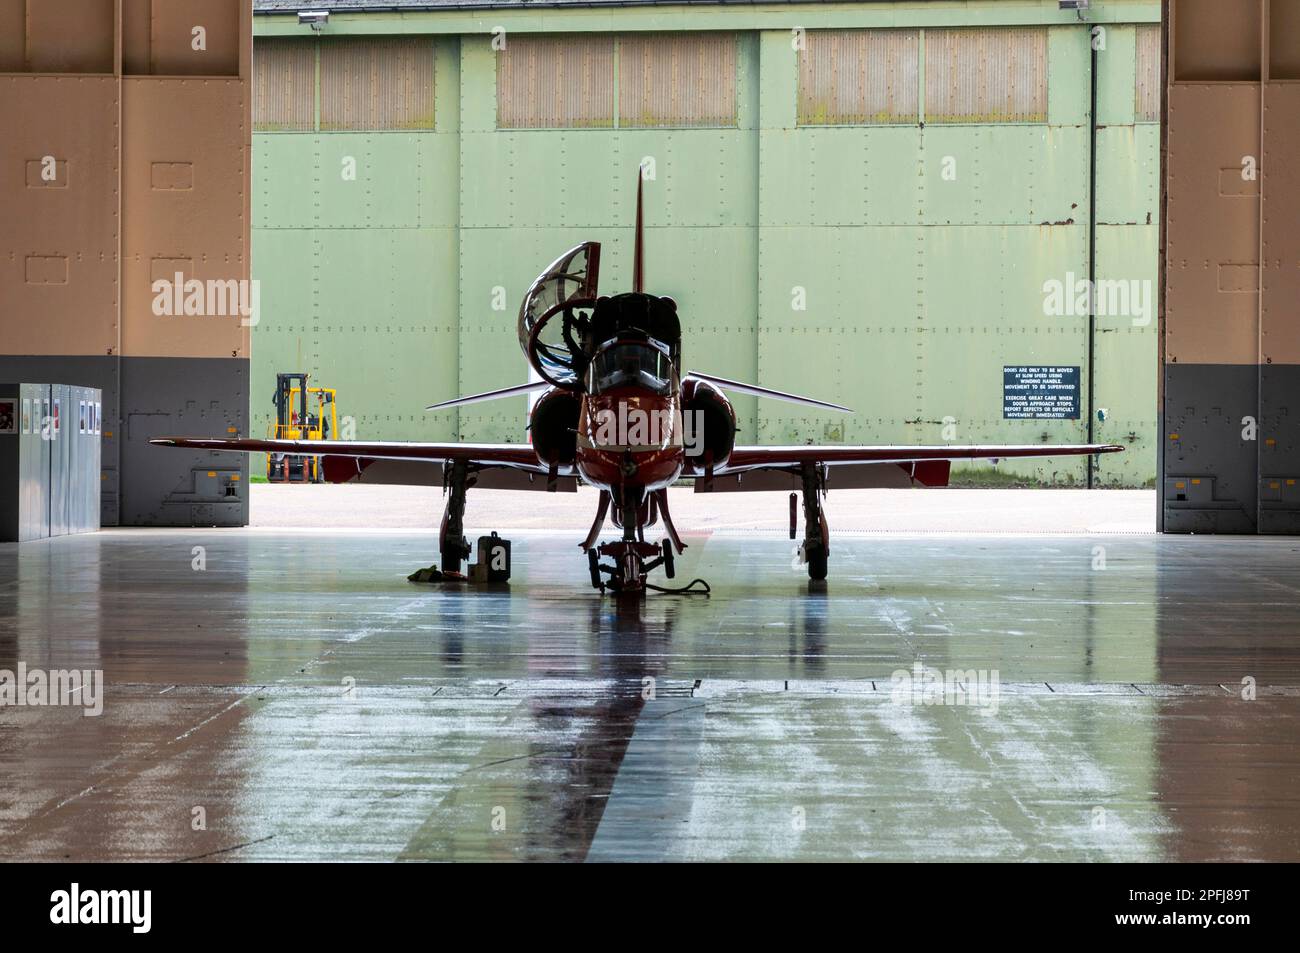 Royal Air Force Red Arrows mostra il team BAe Hawk T1 jet plane in un hangar al RAF Scampton, Lincolnshire, UK. Incorniciato da porte hangar Foto Stock